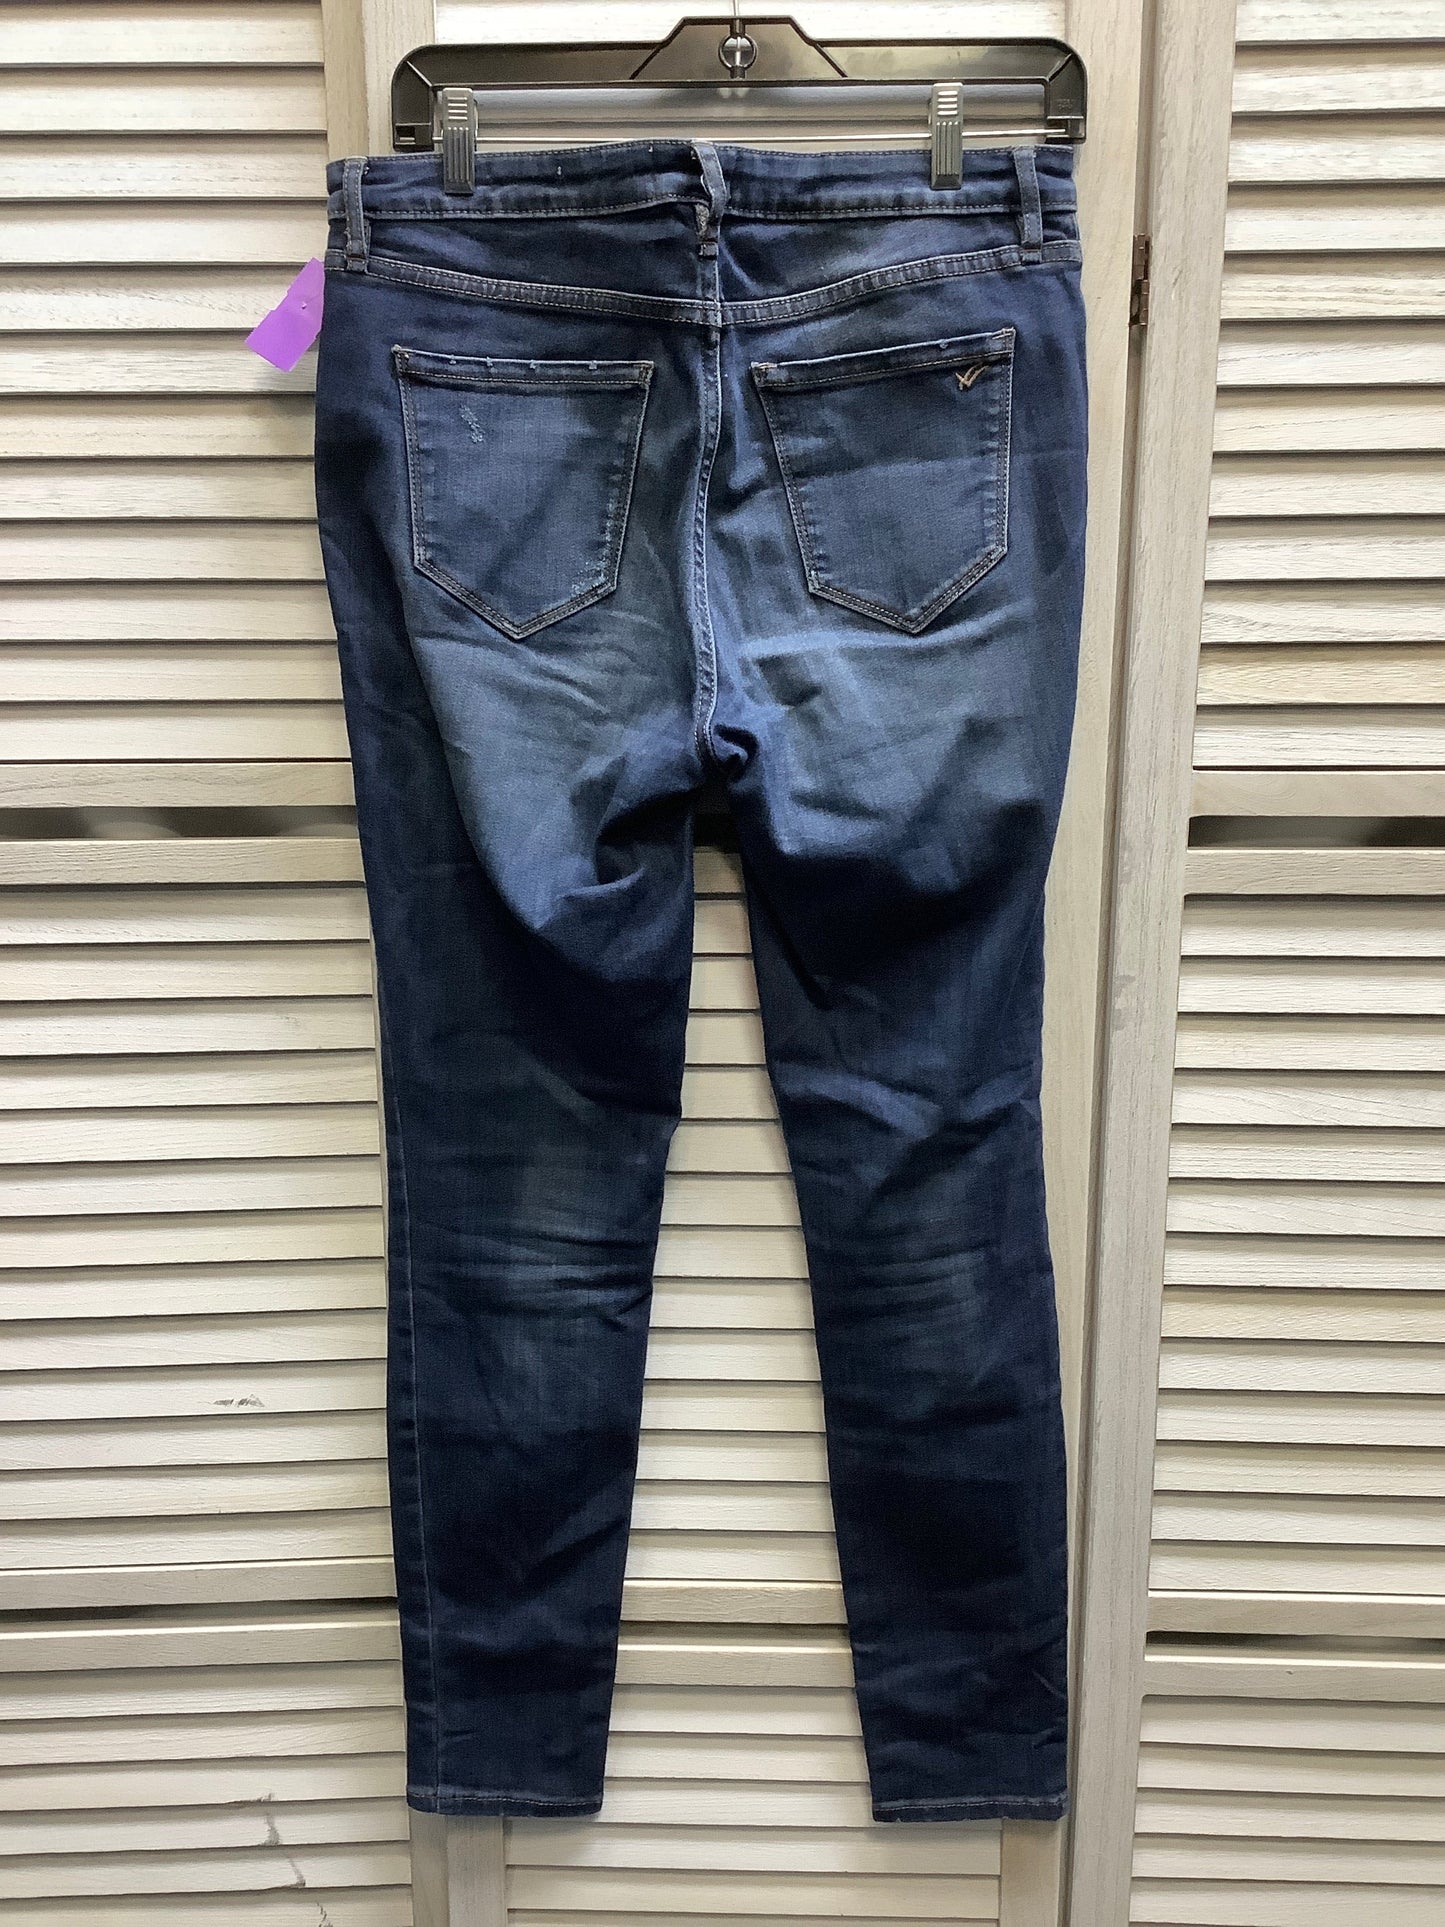 Blue Denim Jeans Skinny William Rast, Size 8